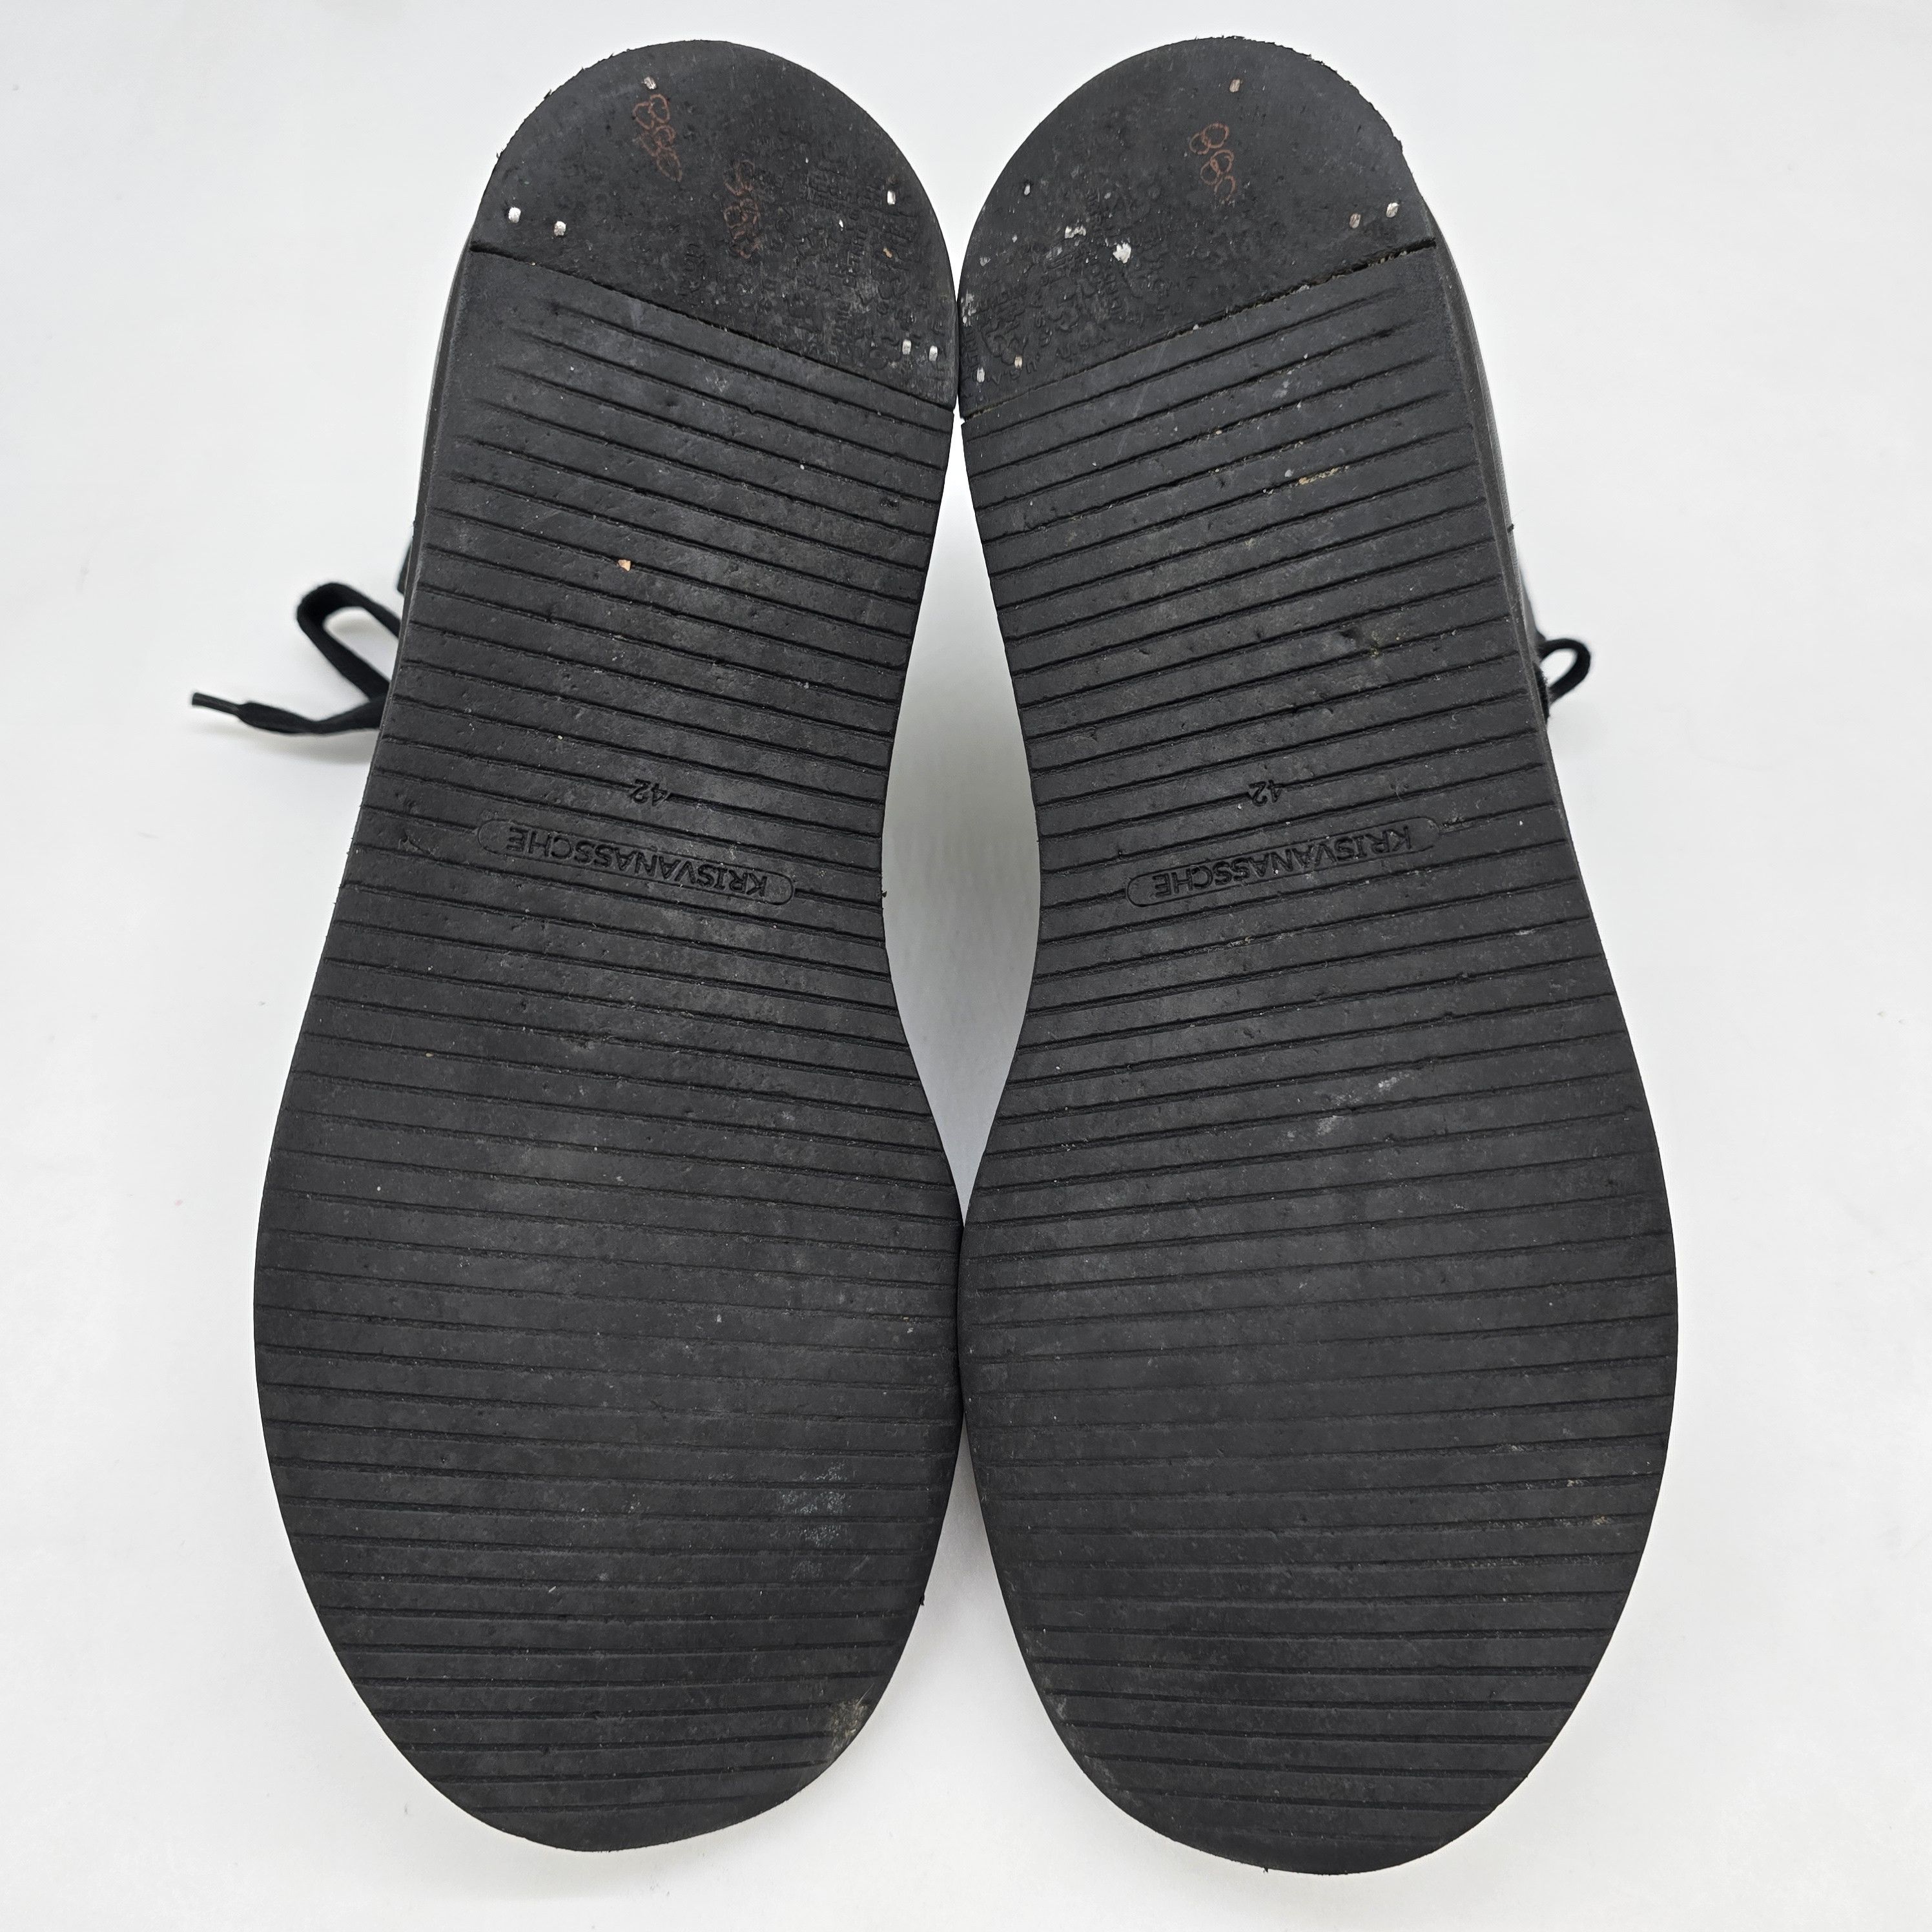 Kris Van Assche - OG Megalace Gladiator Sandals - 8